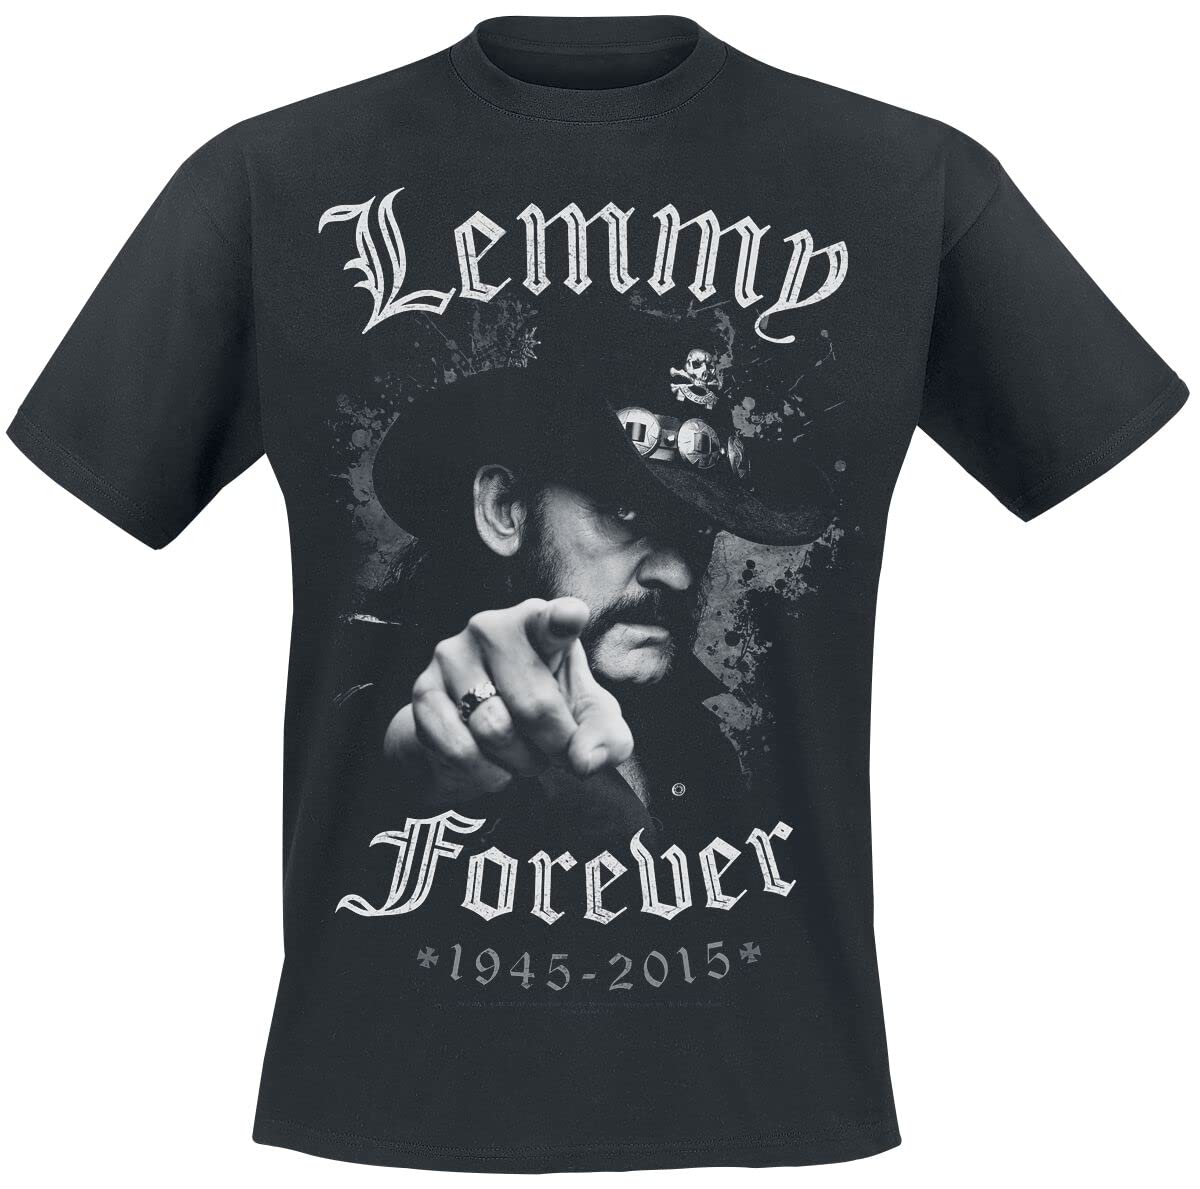 Motörhead Lemmy - Forever Männer T-Shirt schwarz L 100% Baumwolle Band-Merch, Bands